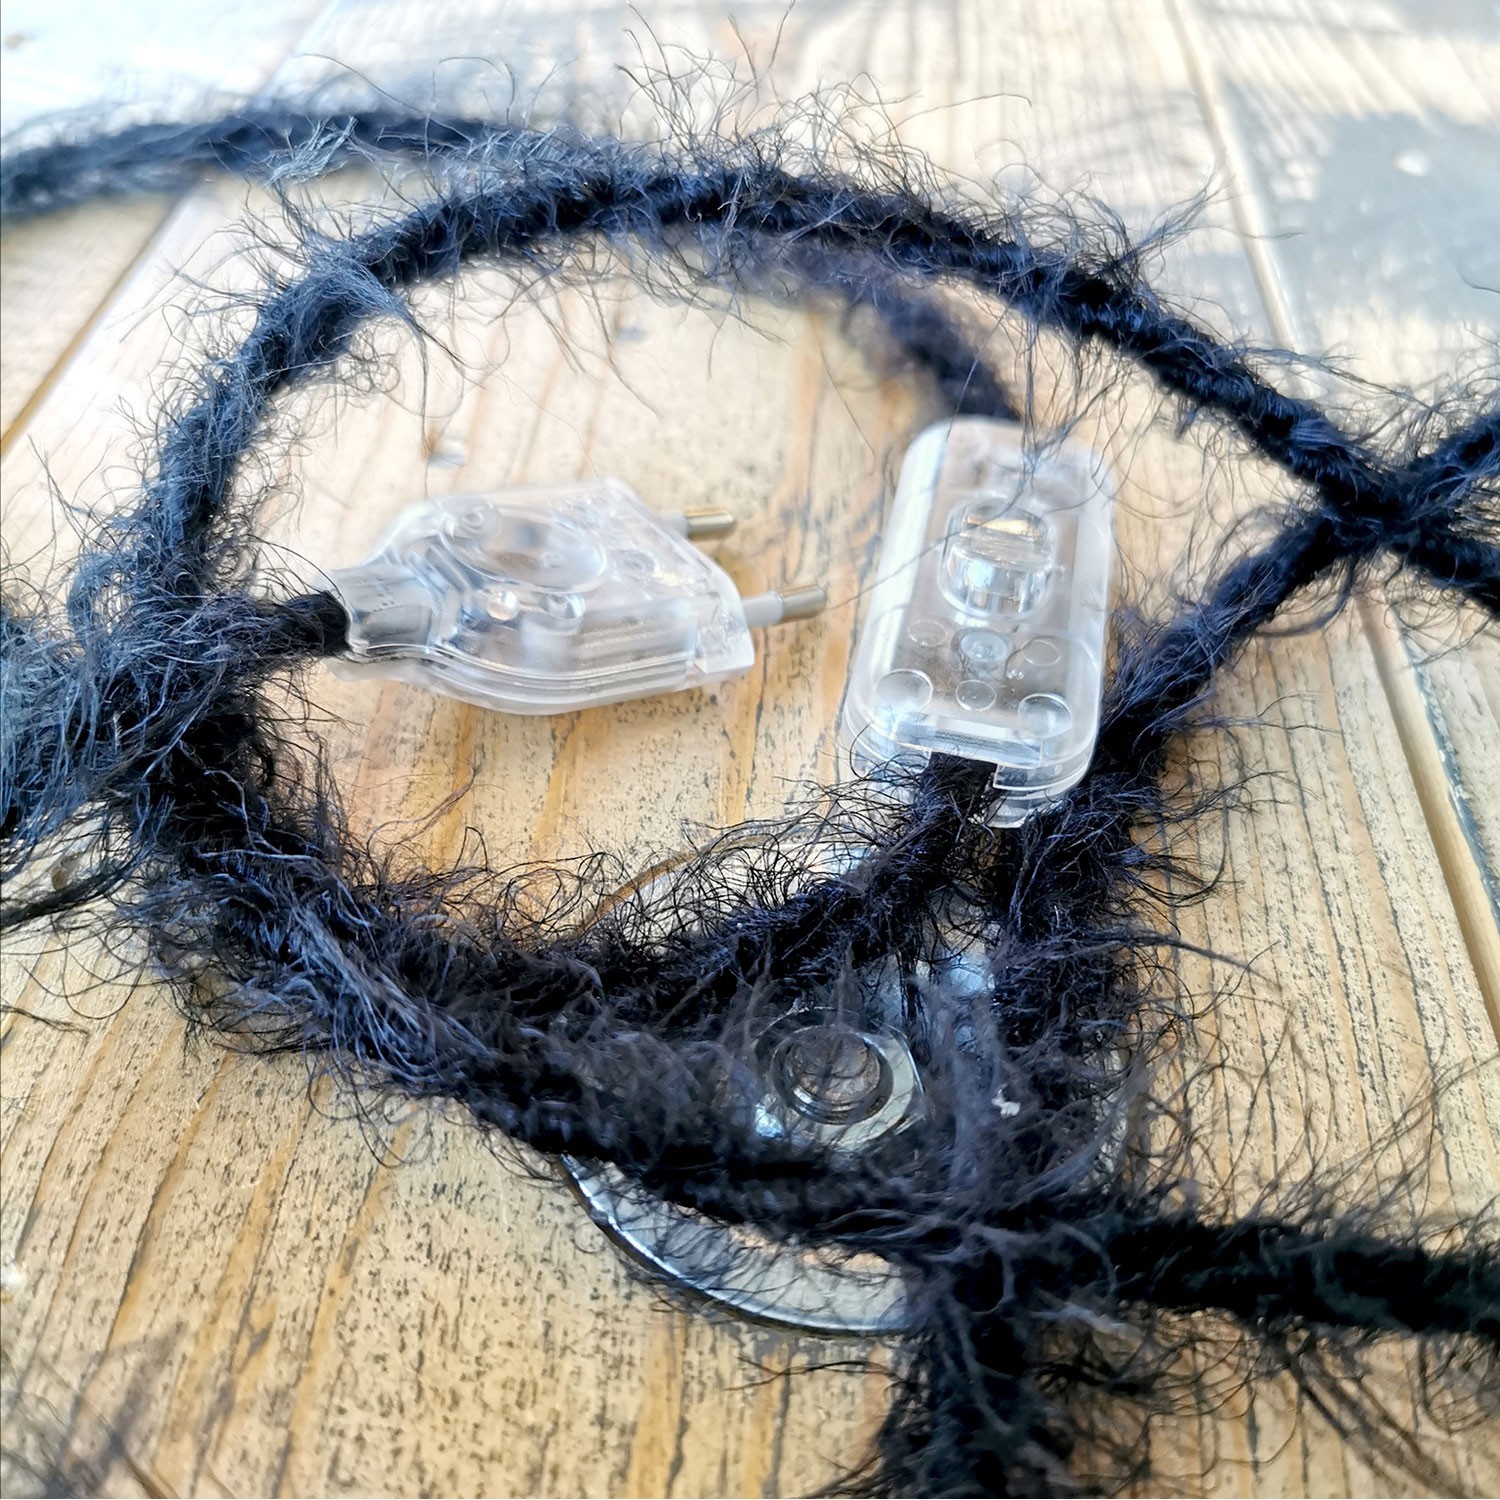 Burlesque upleteni kabel za rasvjetu prekriven tkaninom s efektom dlaka Crni TP04